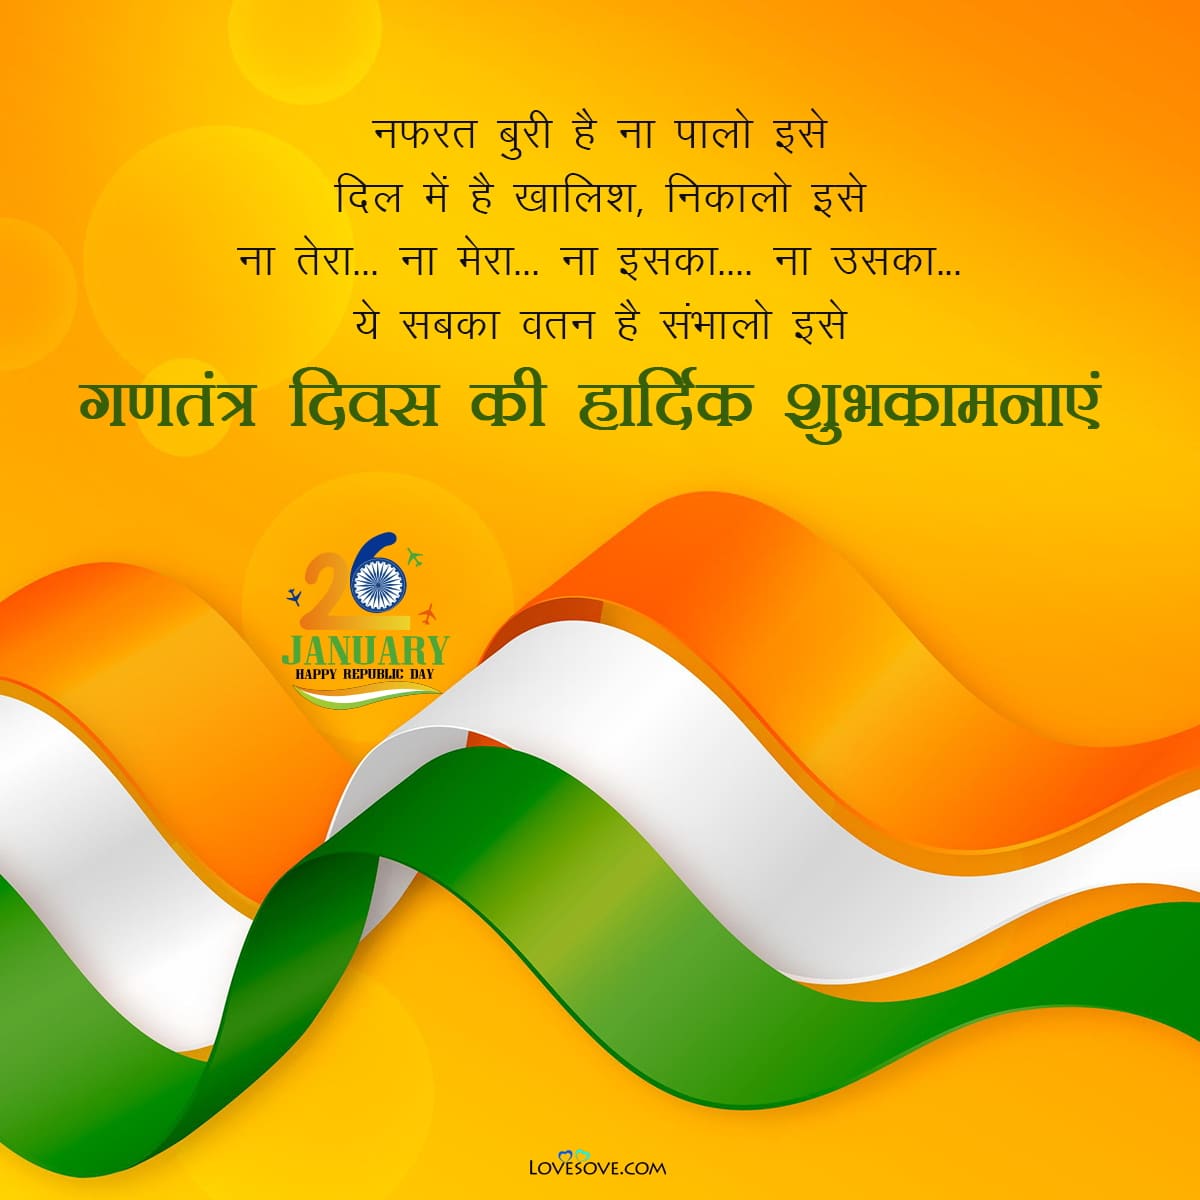 Happy Republic Day Shayari in Hindi, Republic Day Speech in Hindi